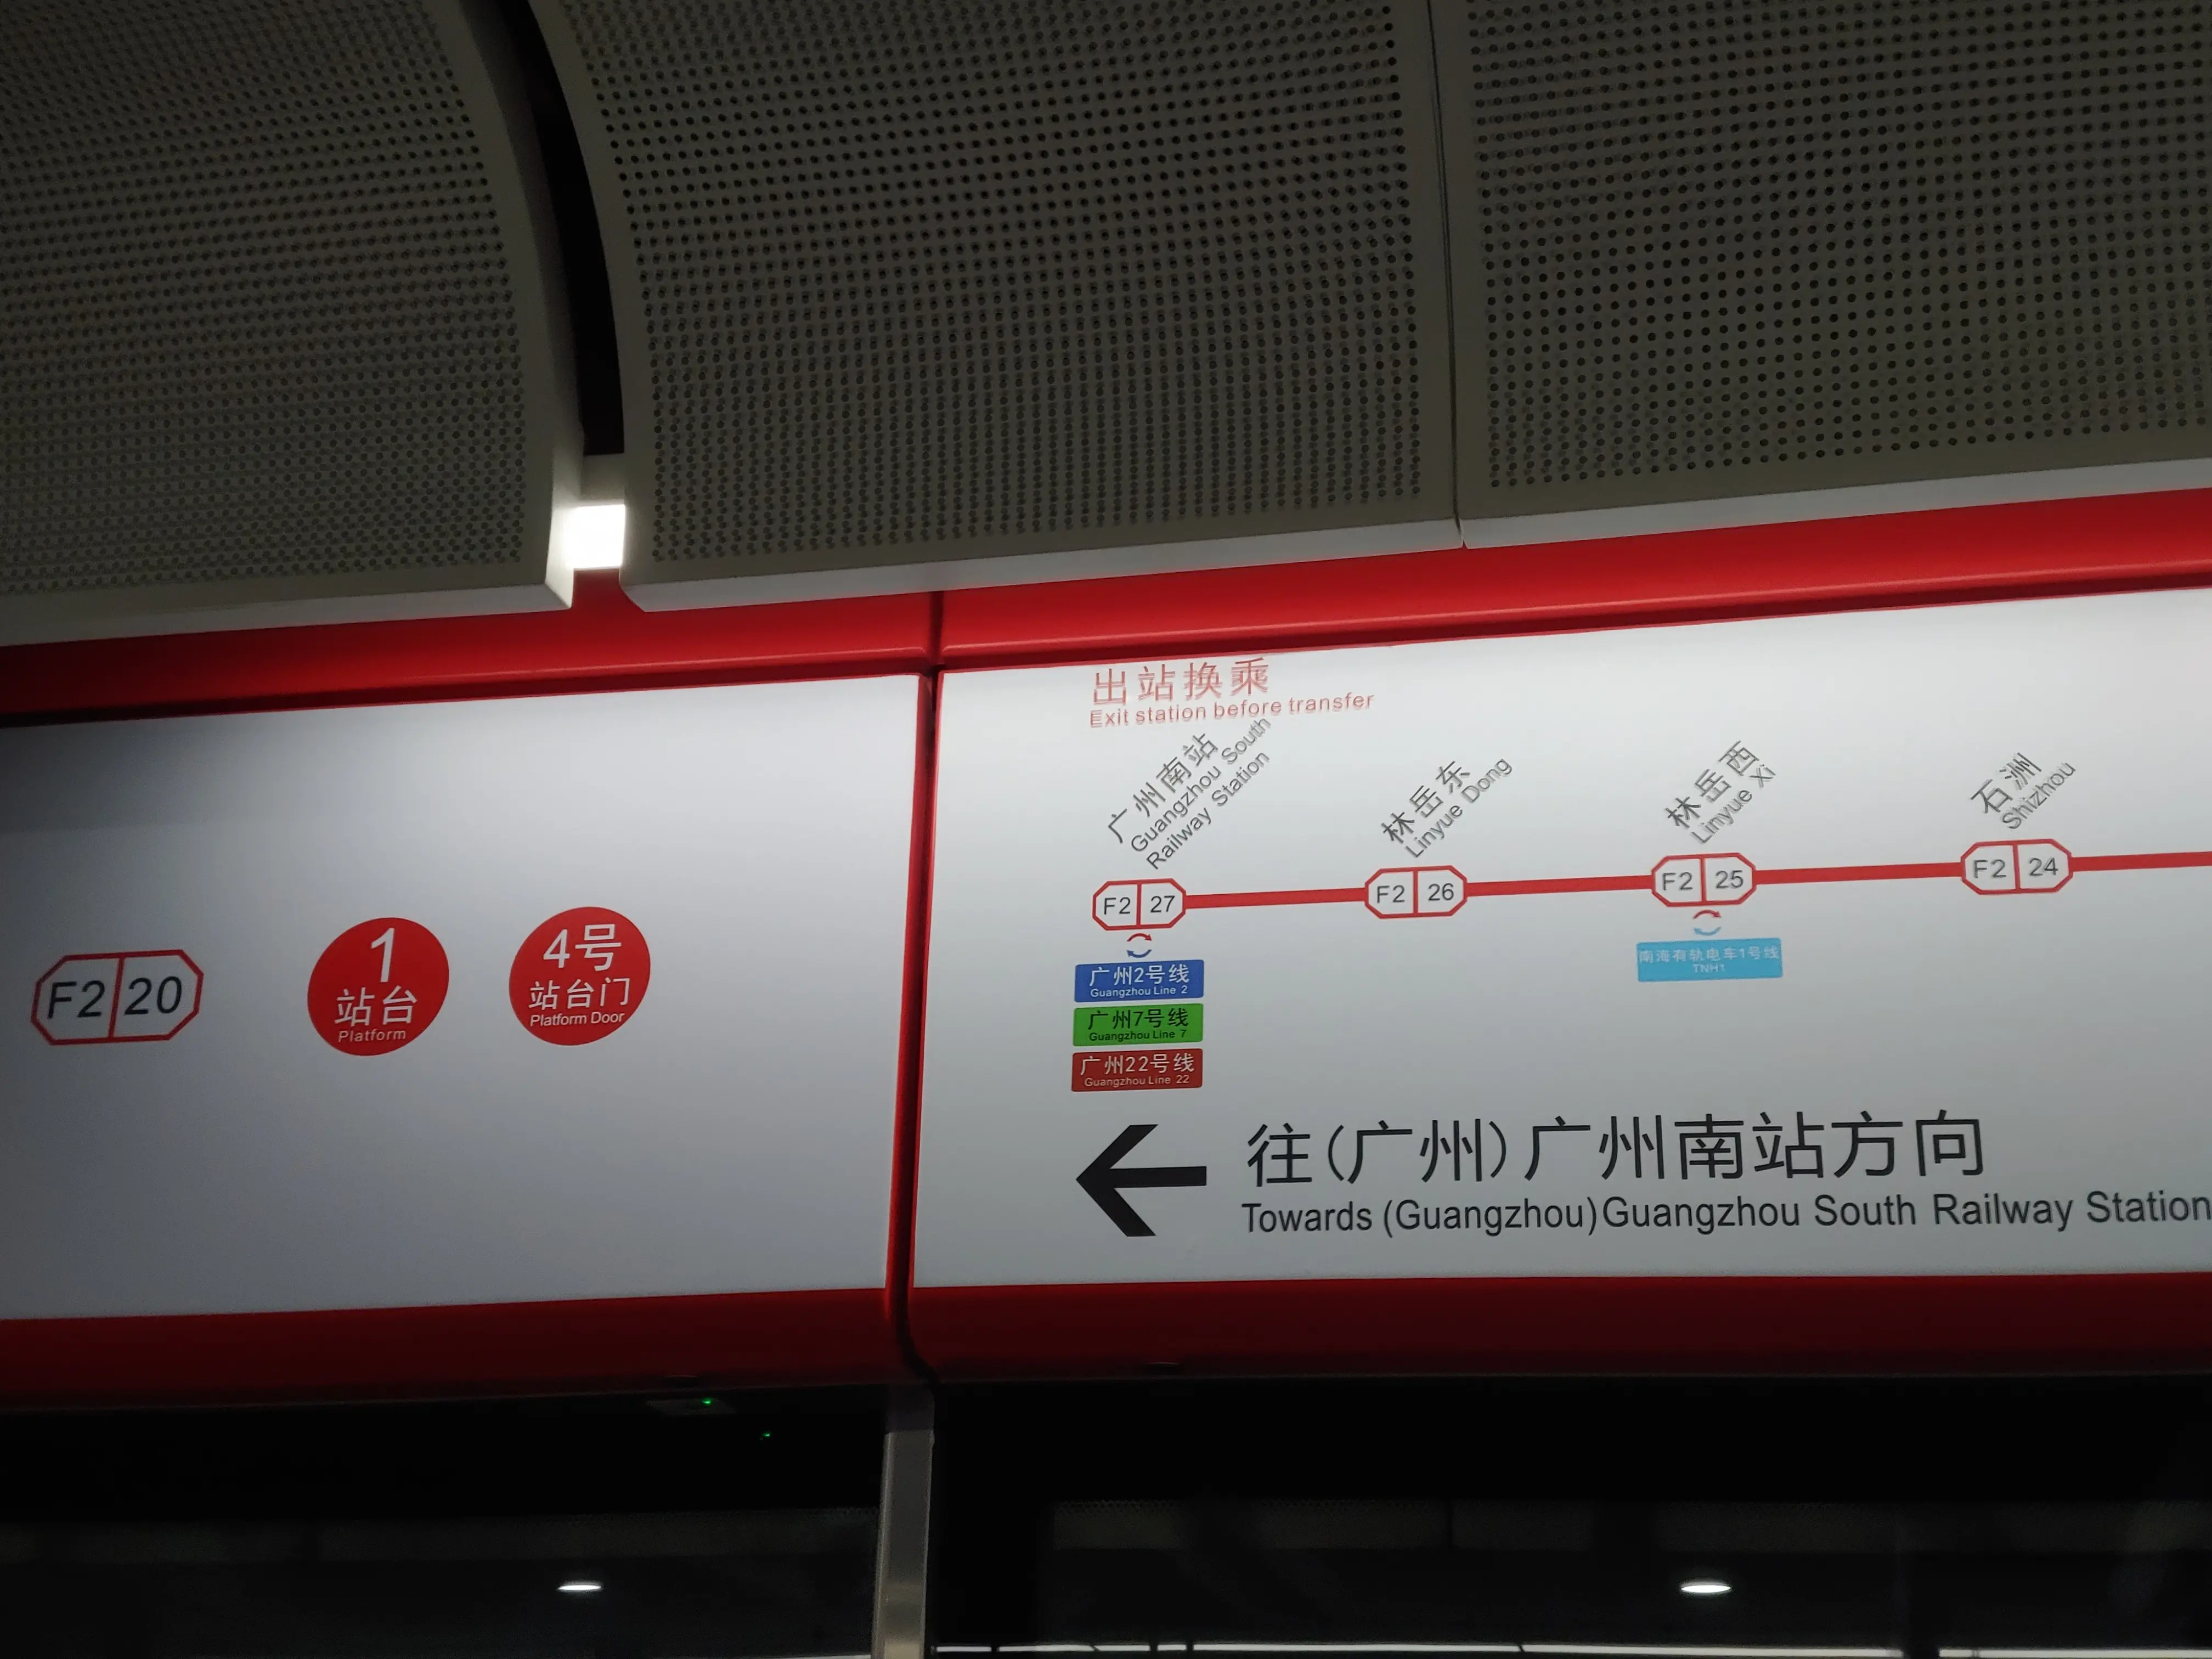 佛山地铁 2 号线往广州南站方向